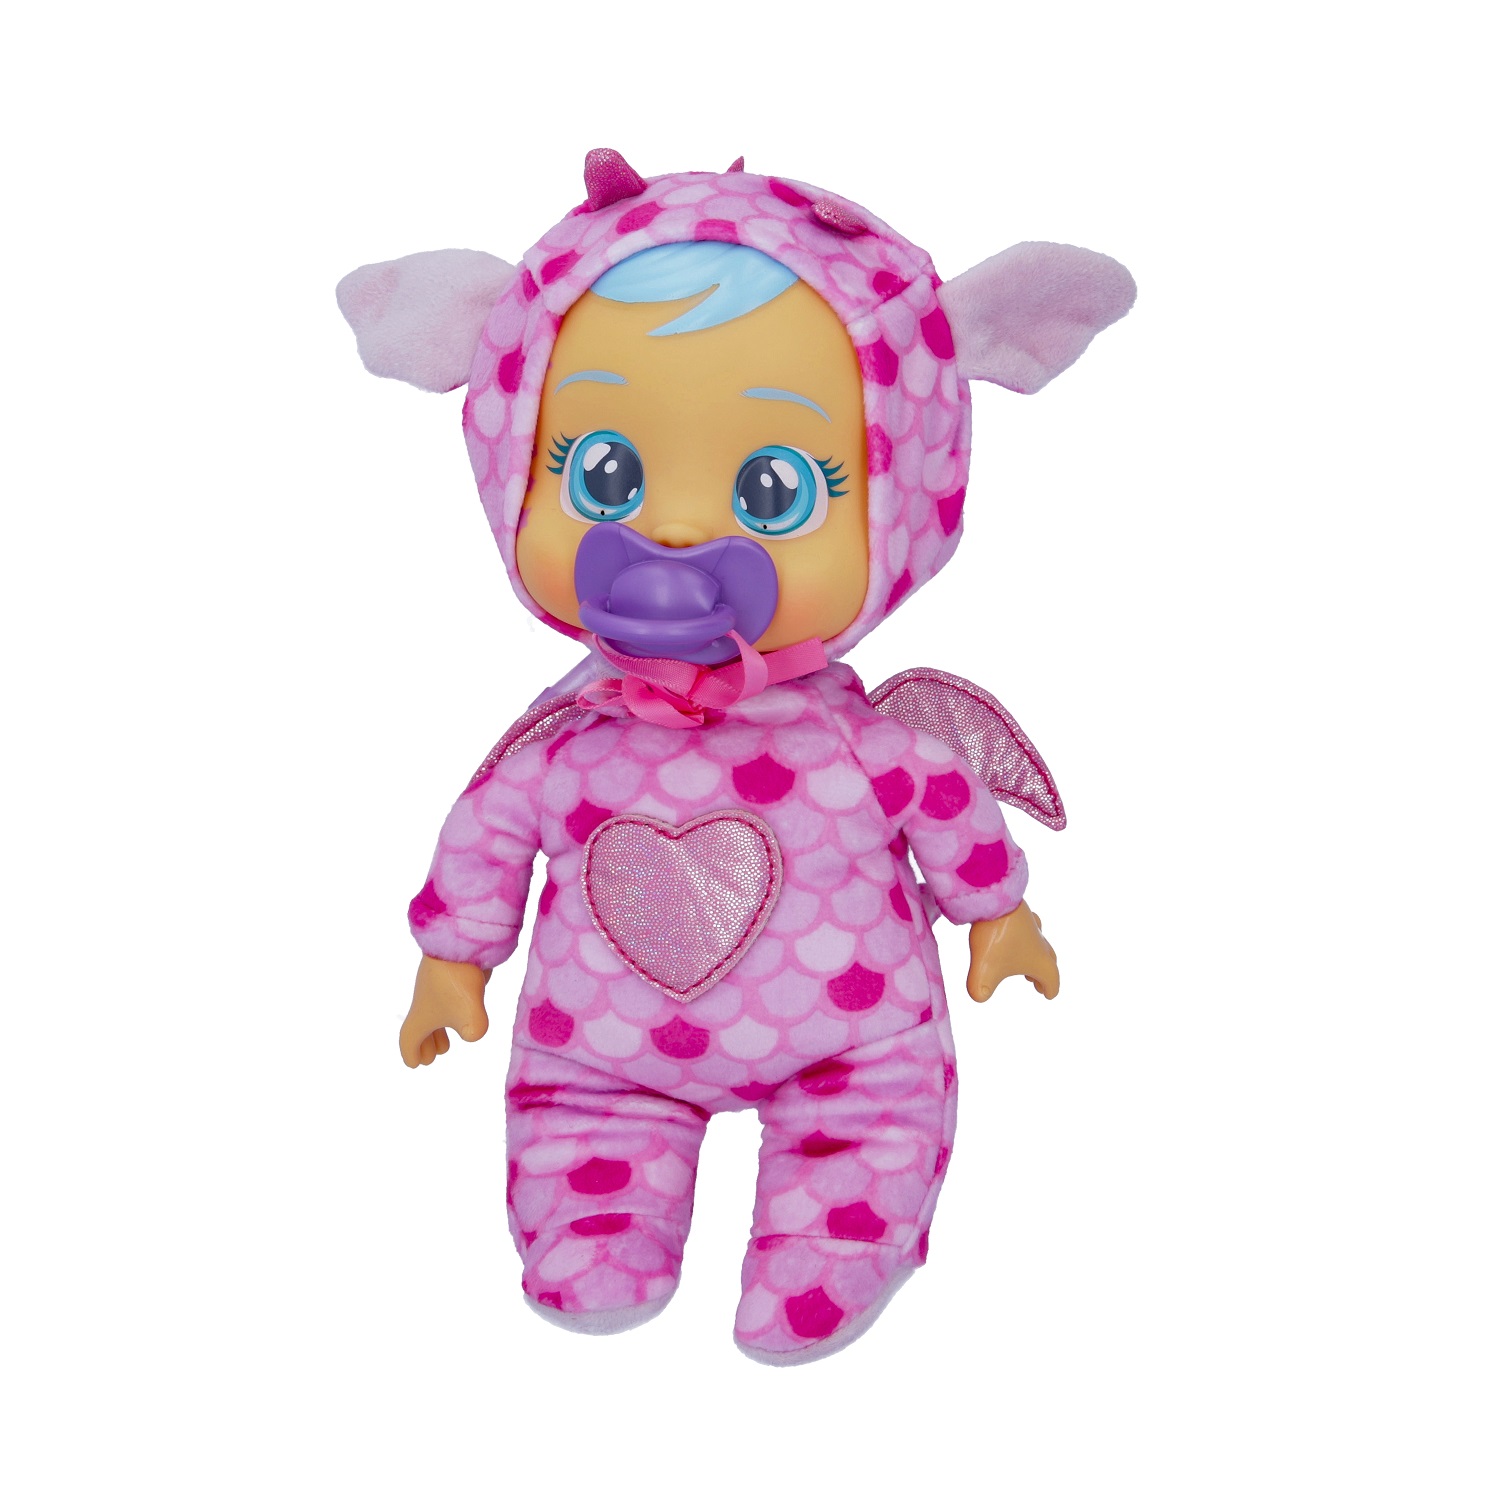 Кукла Cry Babies Край Бебис Бруни Малышка интерактивная плачущая 41039 кукла интерактивная cry babies dressy леди